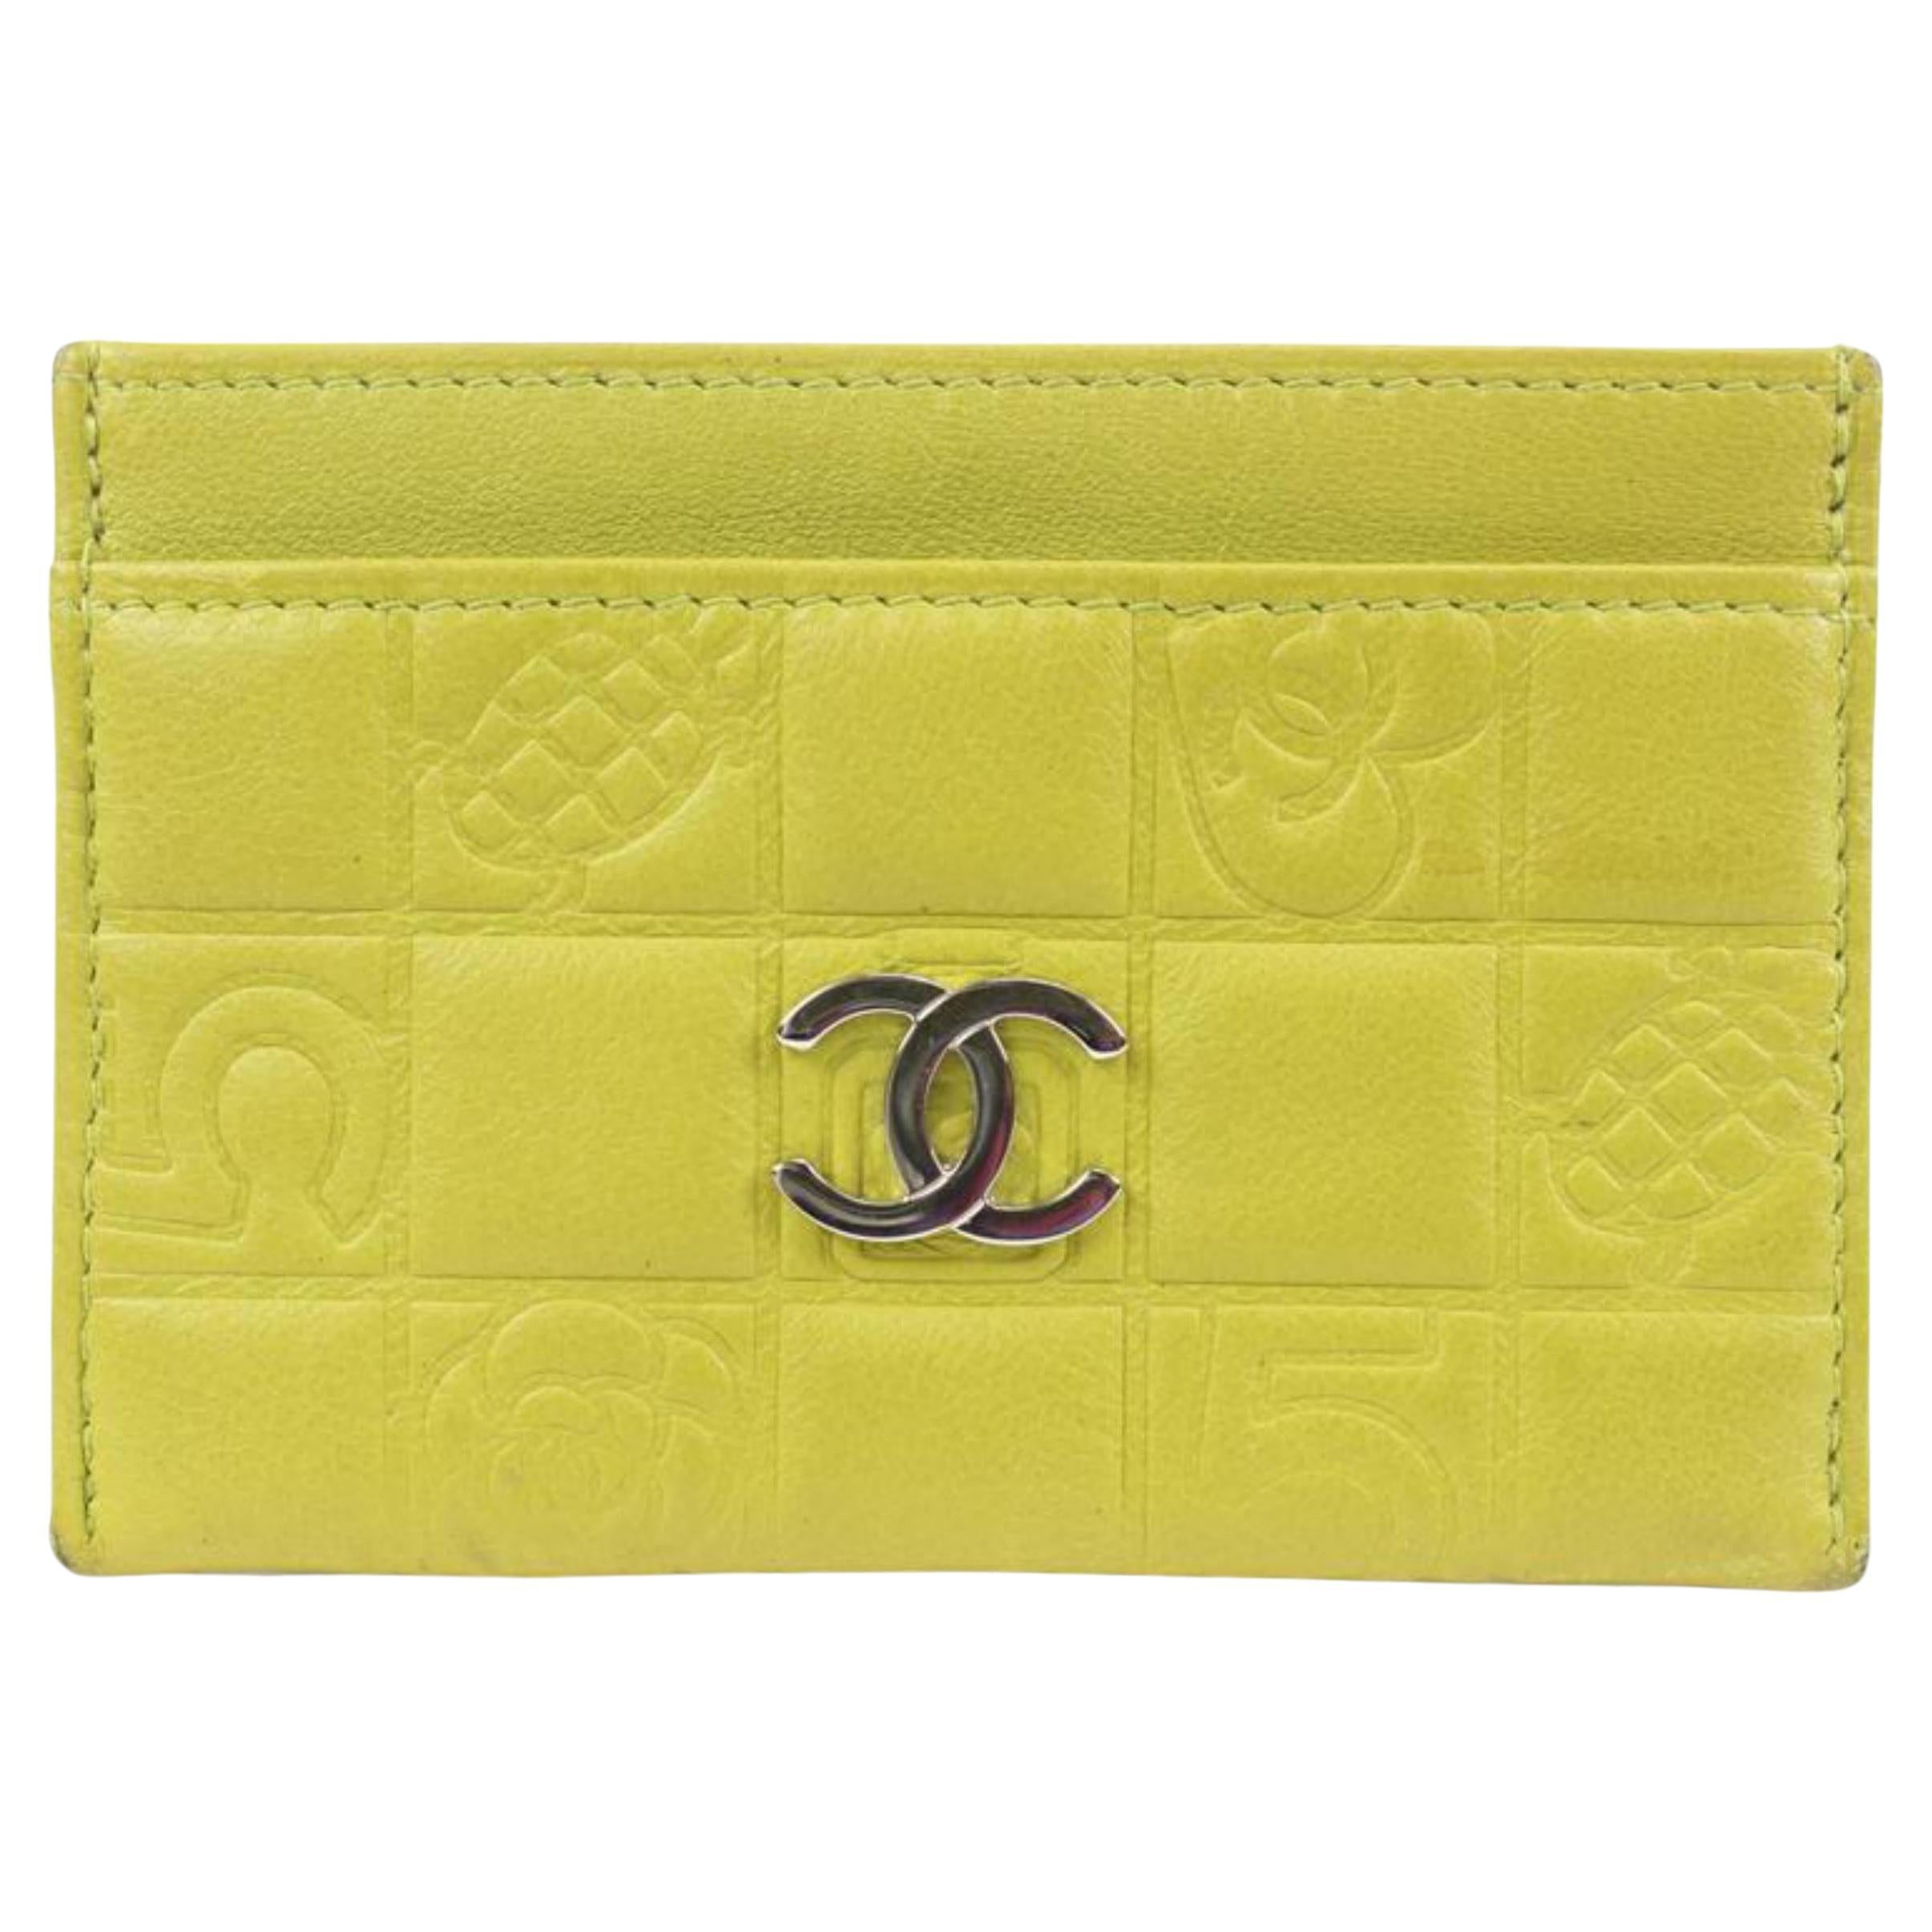 Portefeuille porte-cartes chocolat matelassé vert citron de Chanel 52ck322s